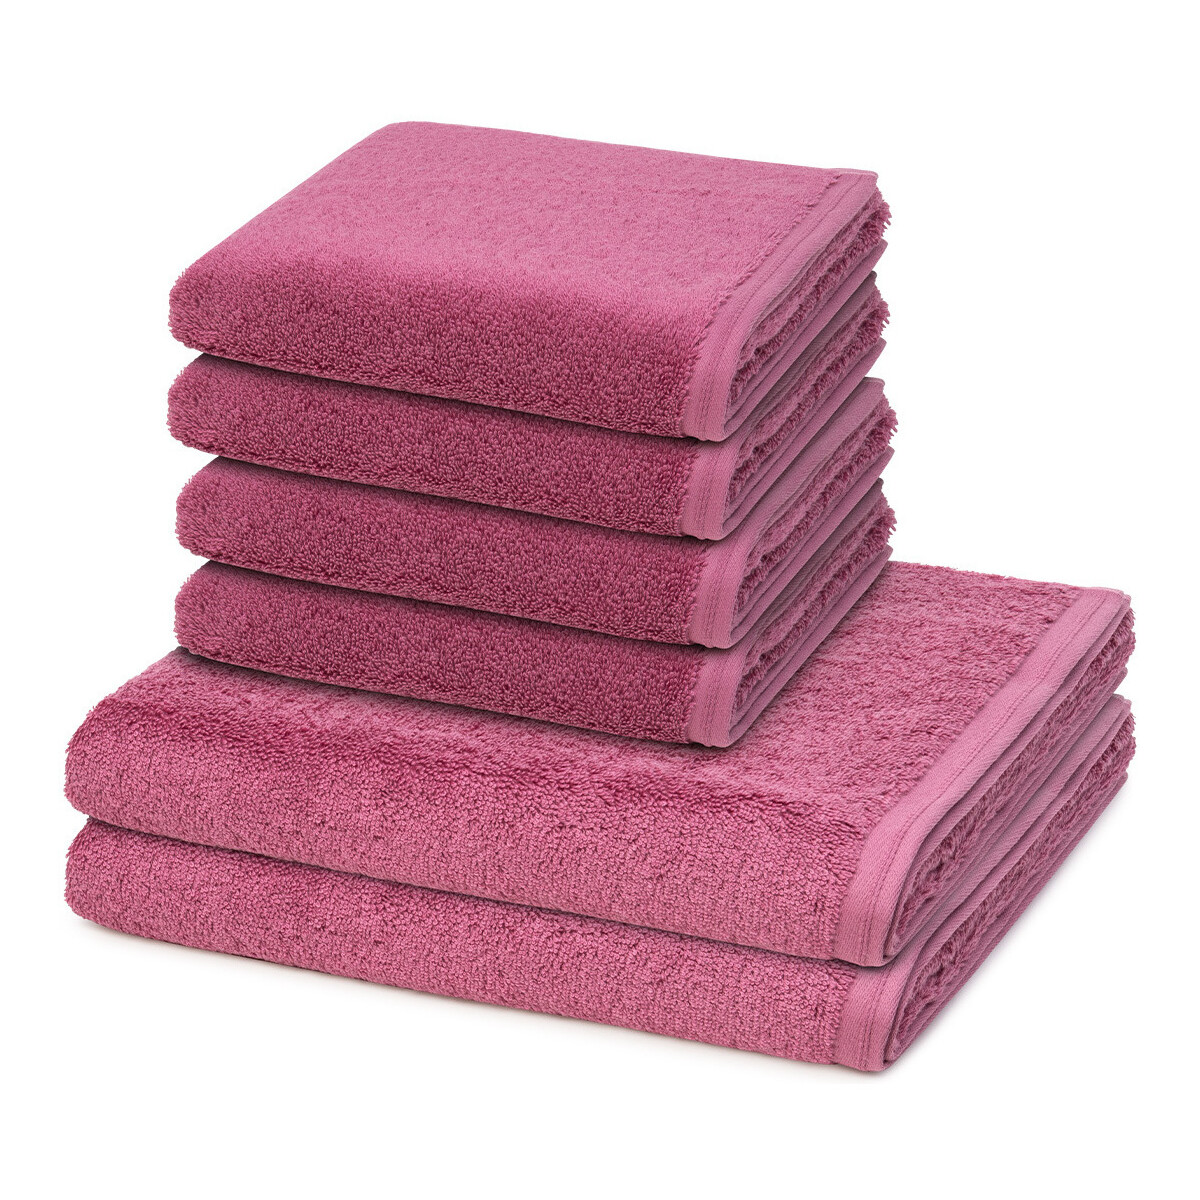 Home Handtuch und Waschlappen Vossen 6er Pack Vegan Life Rosa